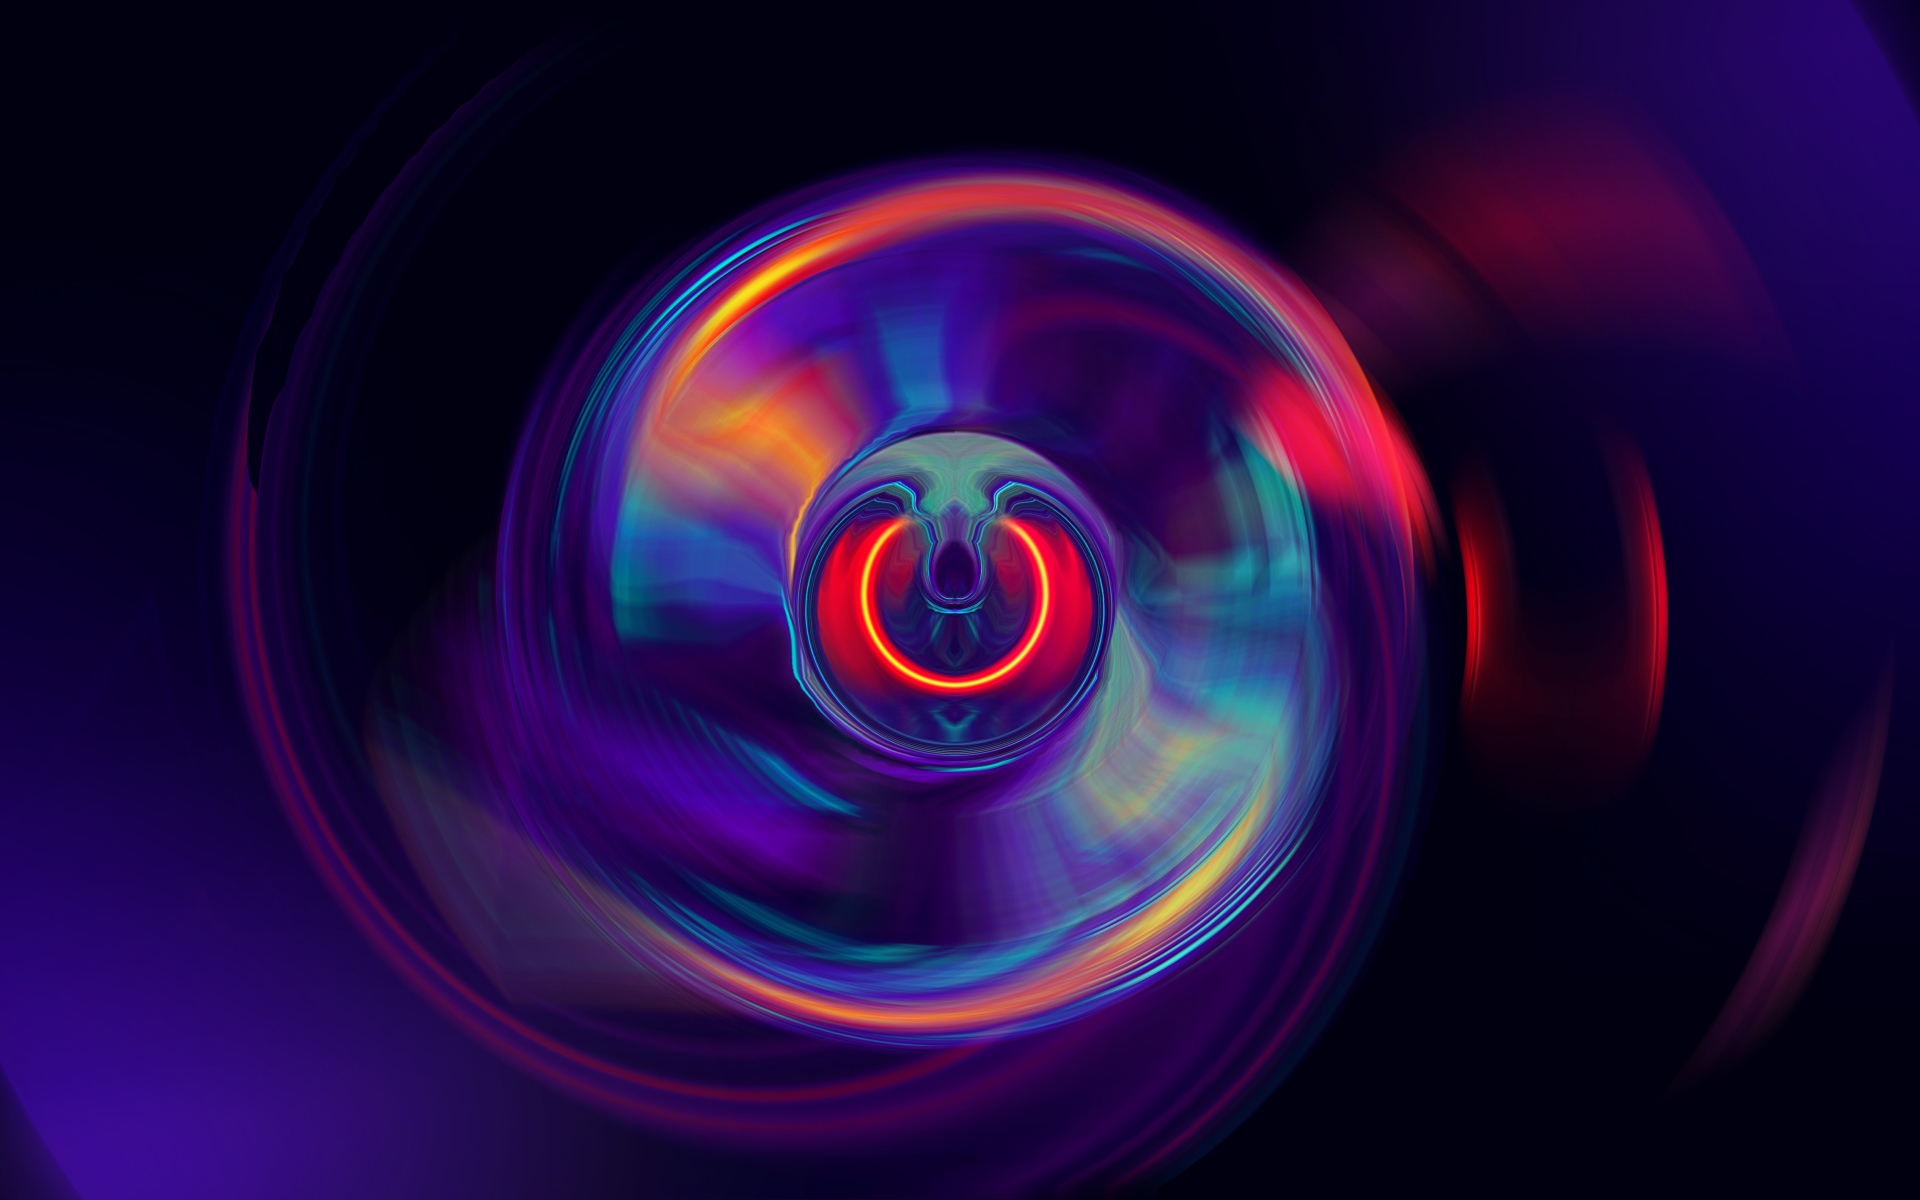 Multicolored Spiral Illusion